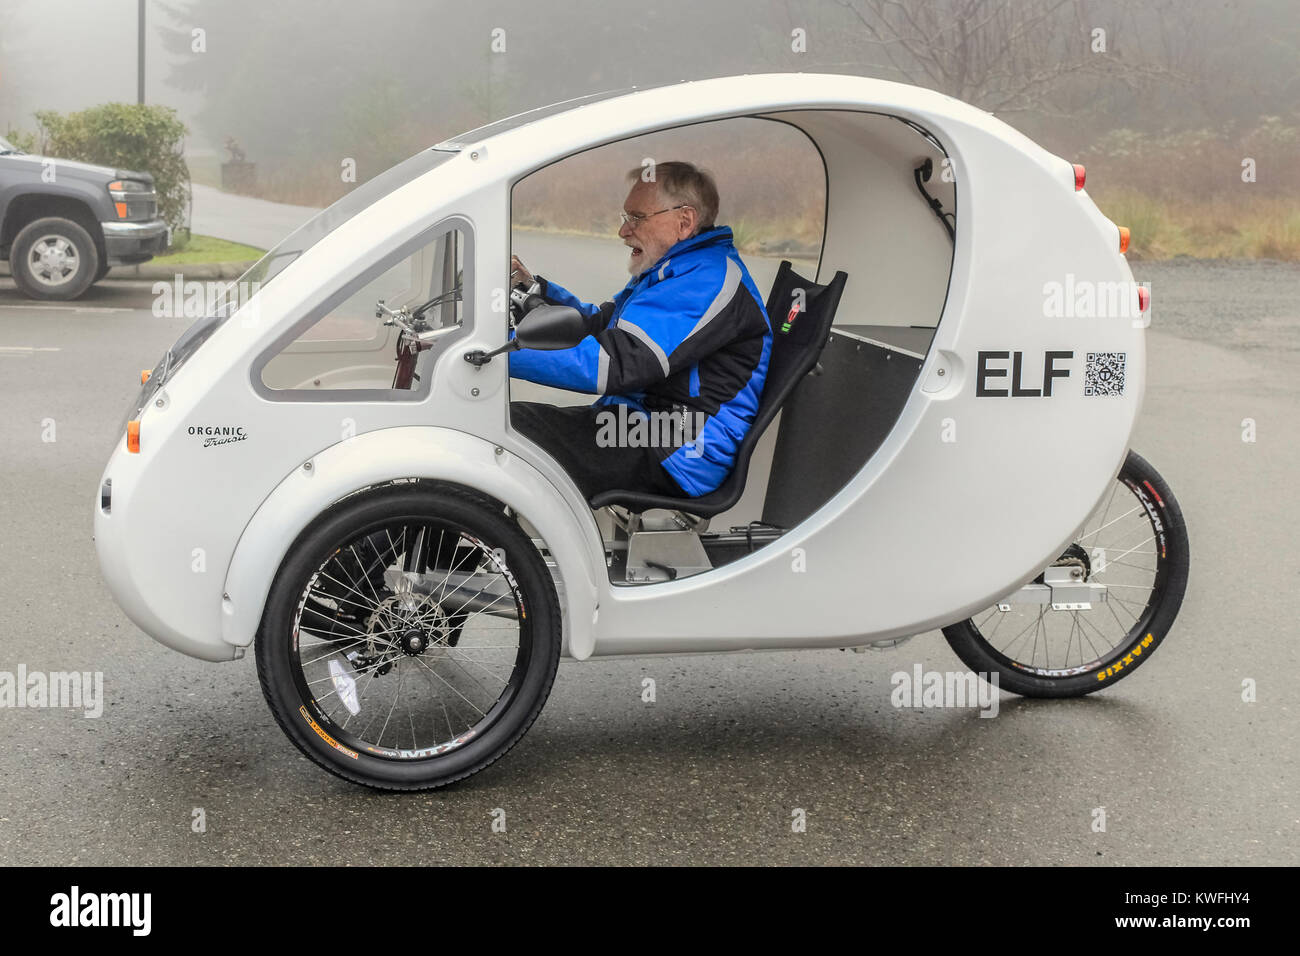 An einem nebligen Wintertag, ein älterer Mann (Alter 94) in einer blauen Jacke nimmt seine erste Fahrt in seinem neuen weißen Pedal - powered/elektrische ELF Dreirad. Stockfoto